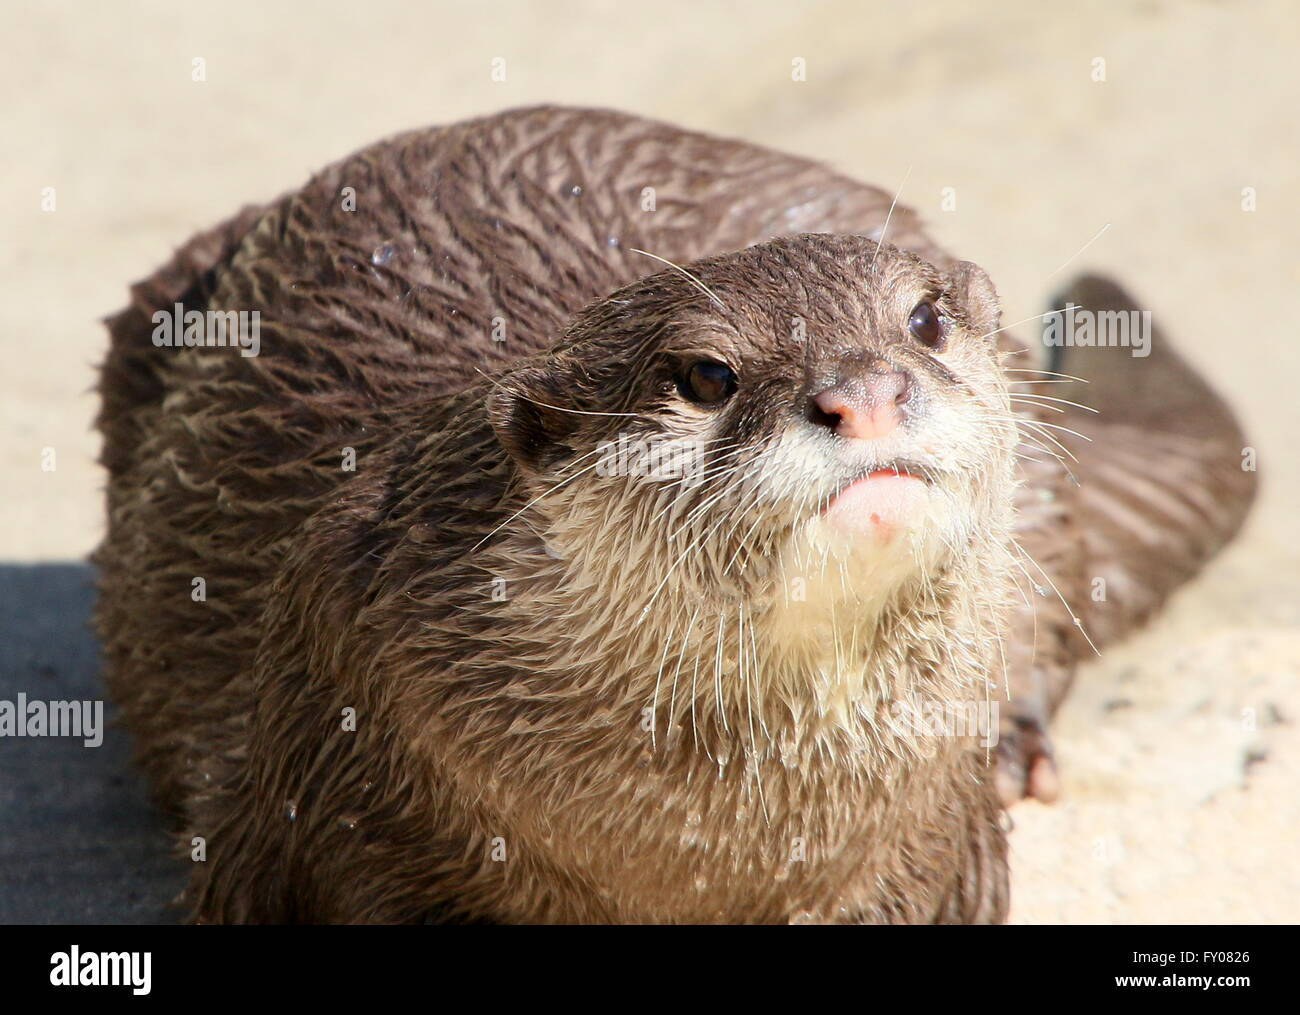 Close-up della testa di un orientale o piccoli asiatici artigliato lontra (Aonyx cinereus) Foto Stock